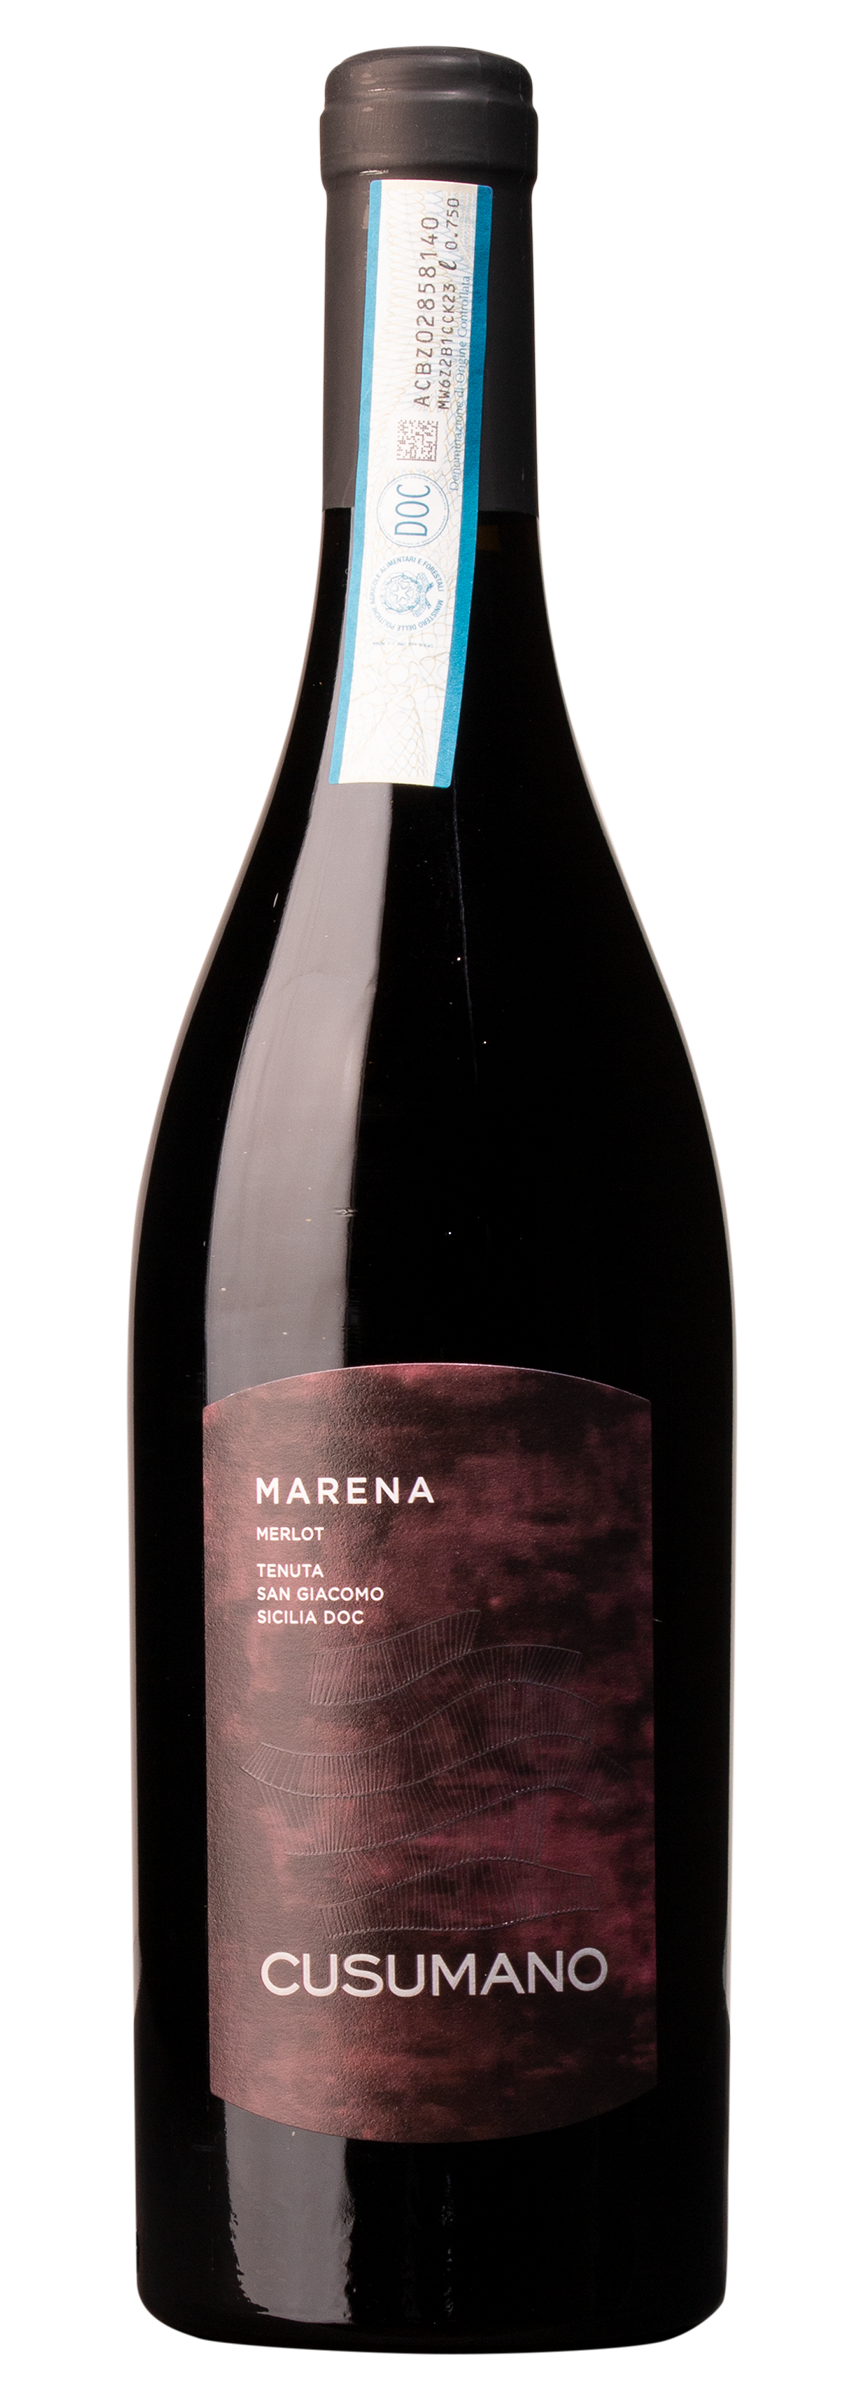 „Marena“ Merlot IGT Terre Siciliane, rosso